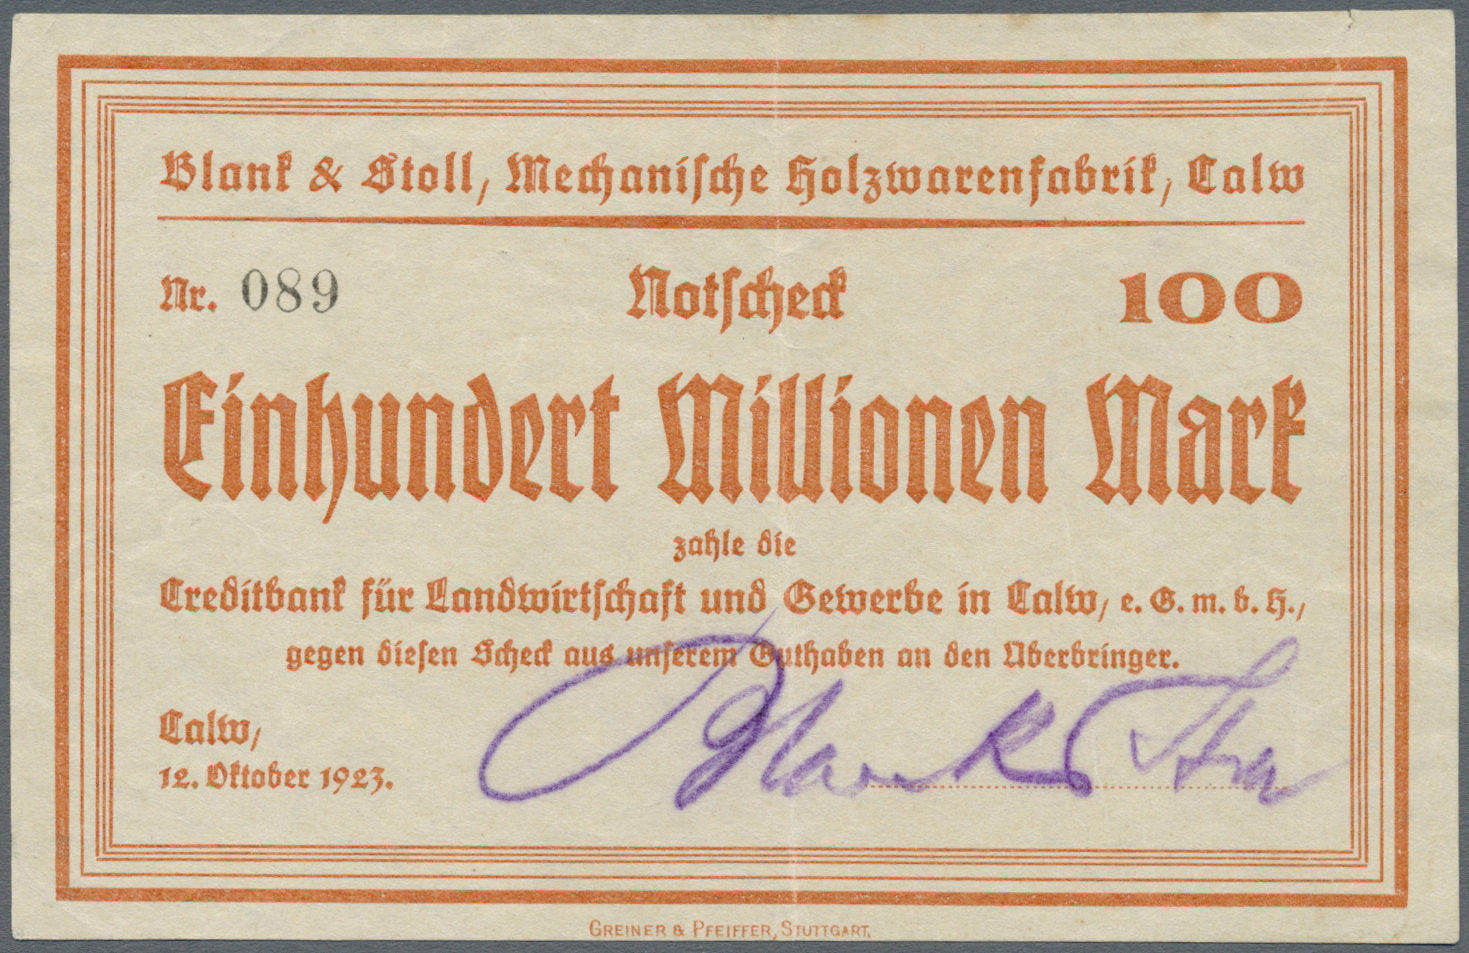 04270 Deutschland - Notgeld - Württemberg: Calw, Blank & Stoll, Mechanische Holzwarenfabrik, 100 Mio. Mark, 12.10.1923, - [11] Emissions Locales